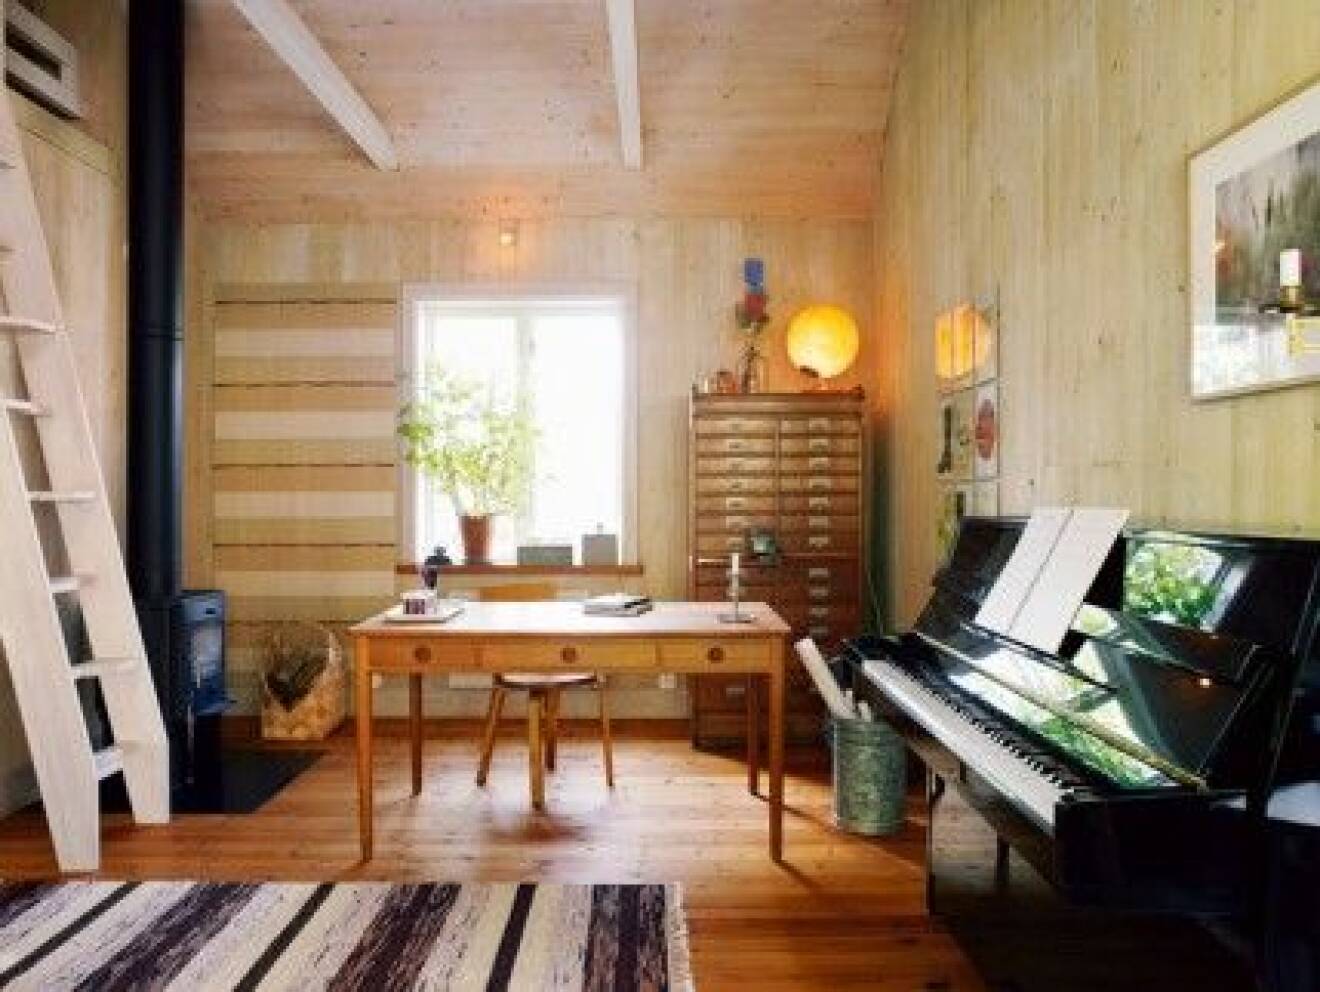  Arbets- och musikrummet har precis som sovrummet tak i nock och såväl väggar som tak är råspont som laserats ton i ton. Golvet är slipat och oljat. Tyget på väggen är hantverk i ordets rätta bemärkelse, signerat moster Edit, handvävt av växtfärgad och handspunnen ull. Tryckeriskåpet är ett loppisfynd medan skrivbordet är ritat av Hans J Wegner. Braskaminen är en Andersen 4. 